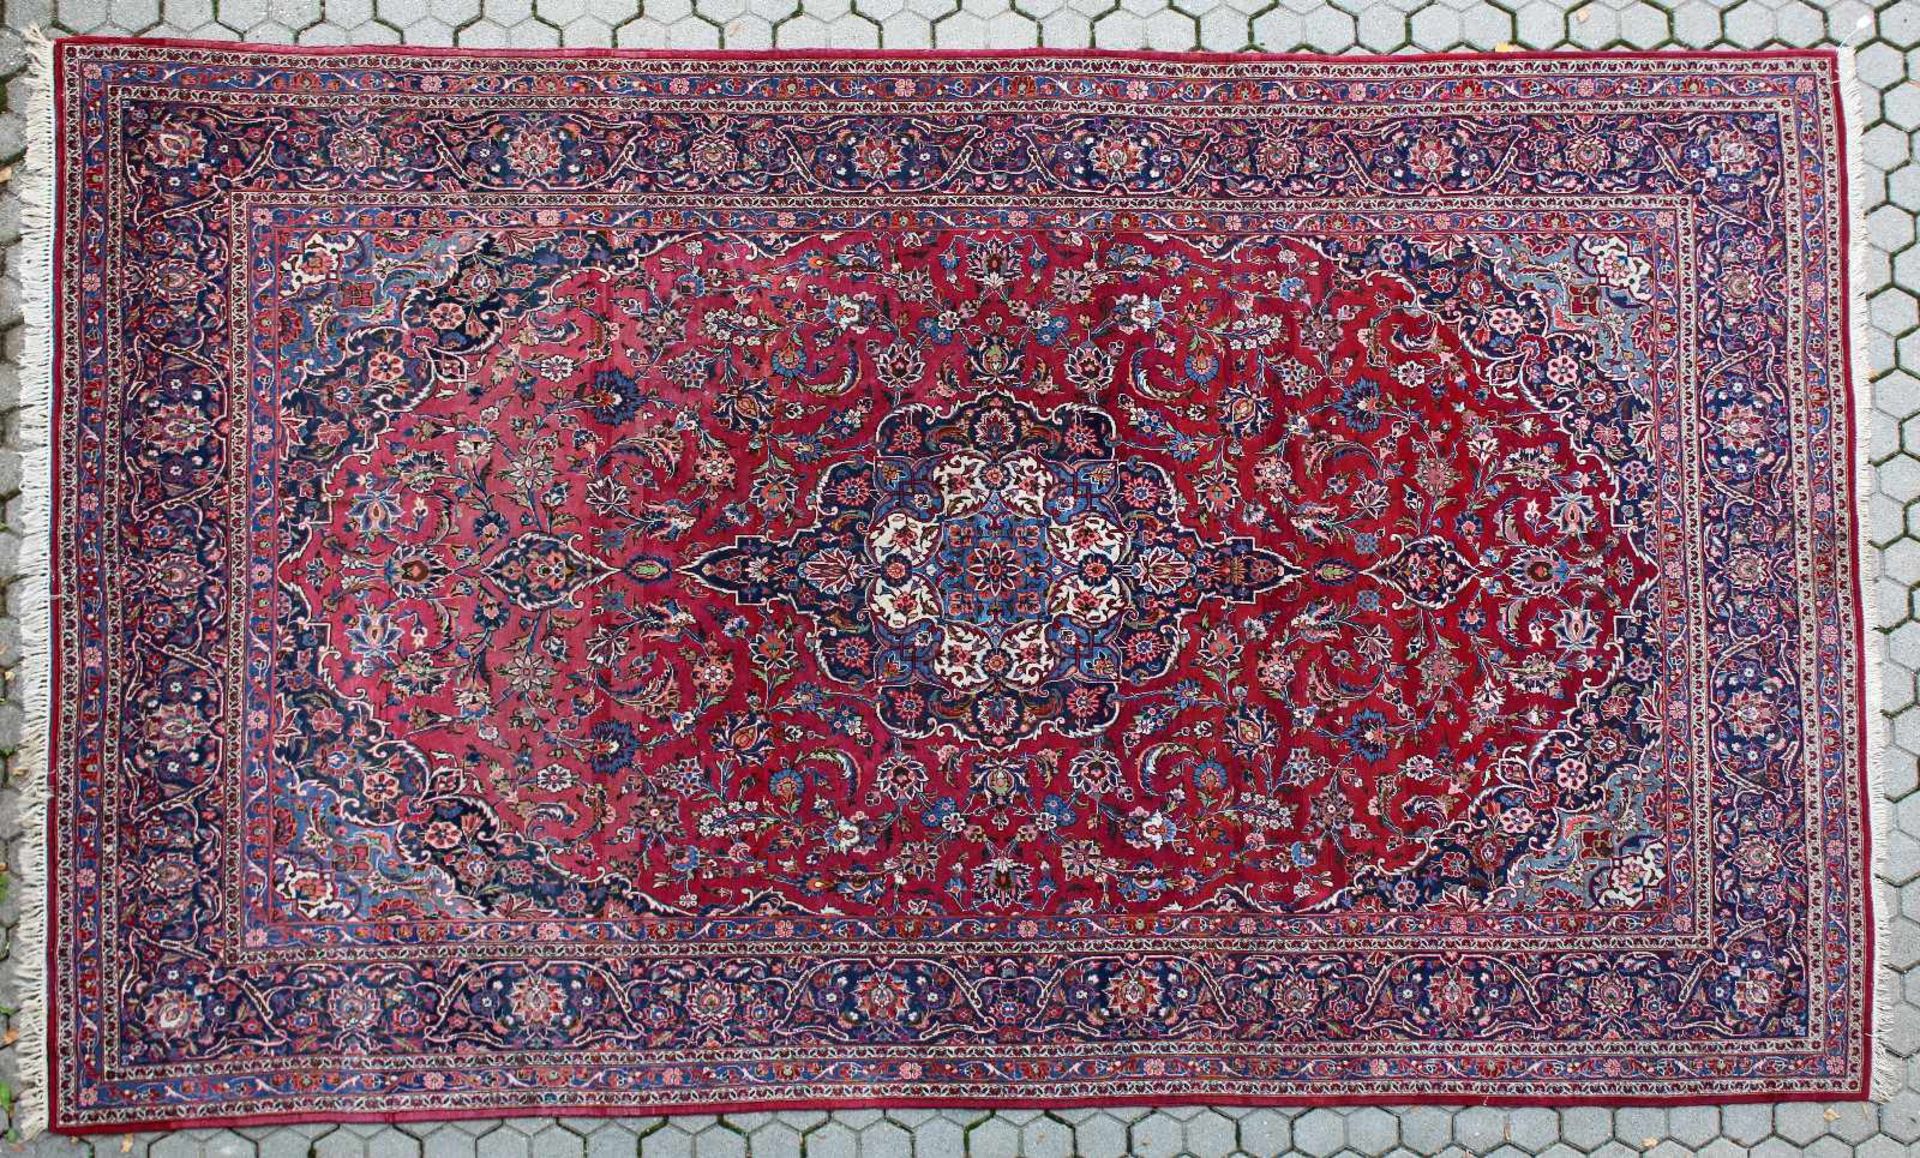 Keschan - Persien - älterGrundfarben Rot- und Blautöne, blauer Schuß, Abrash, Medaillon,